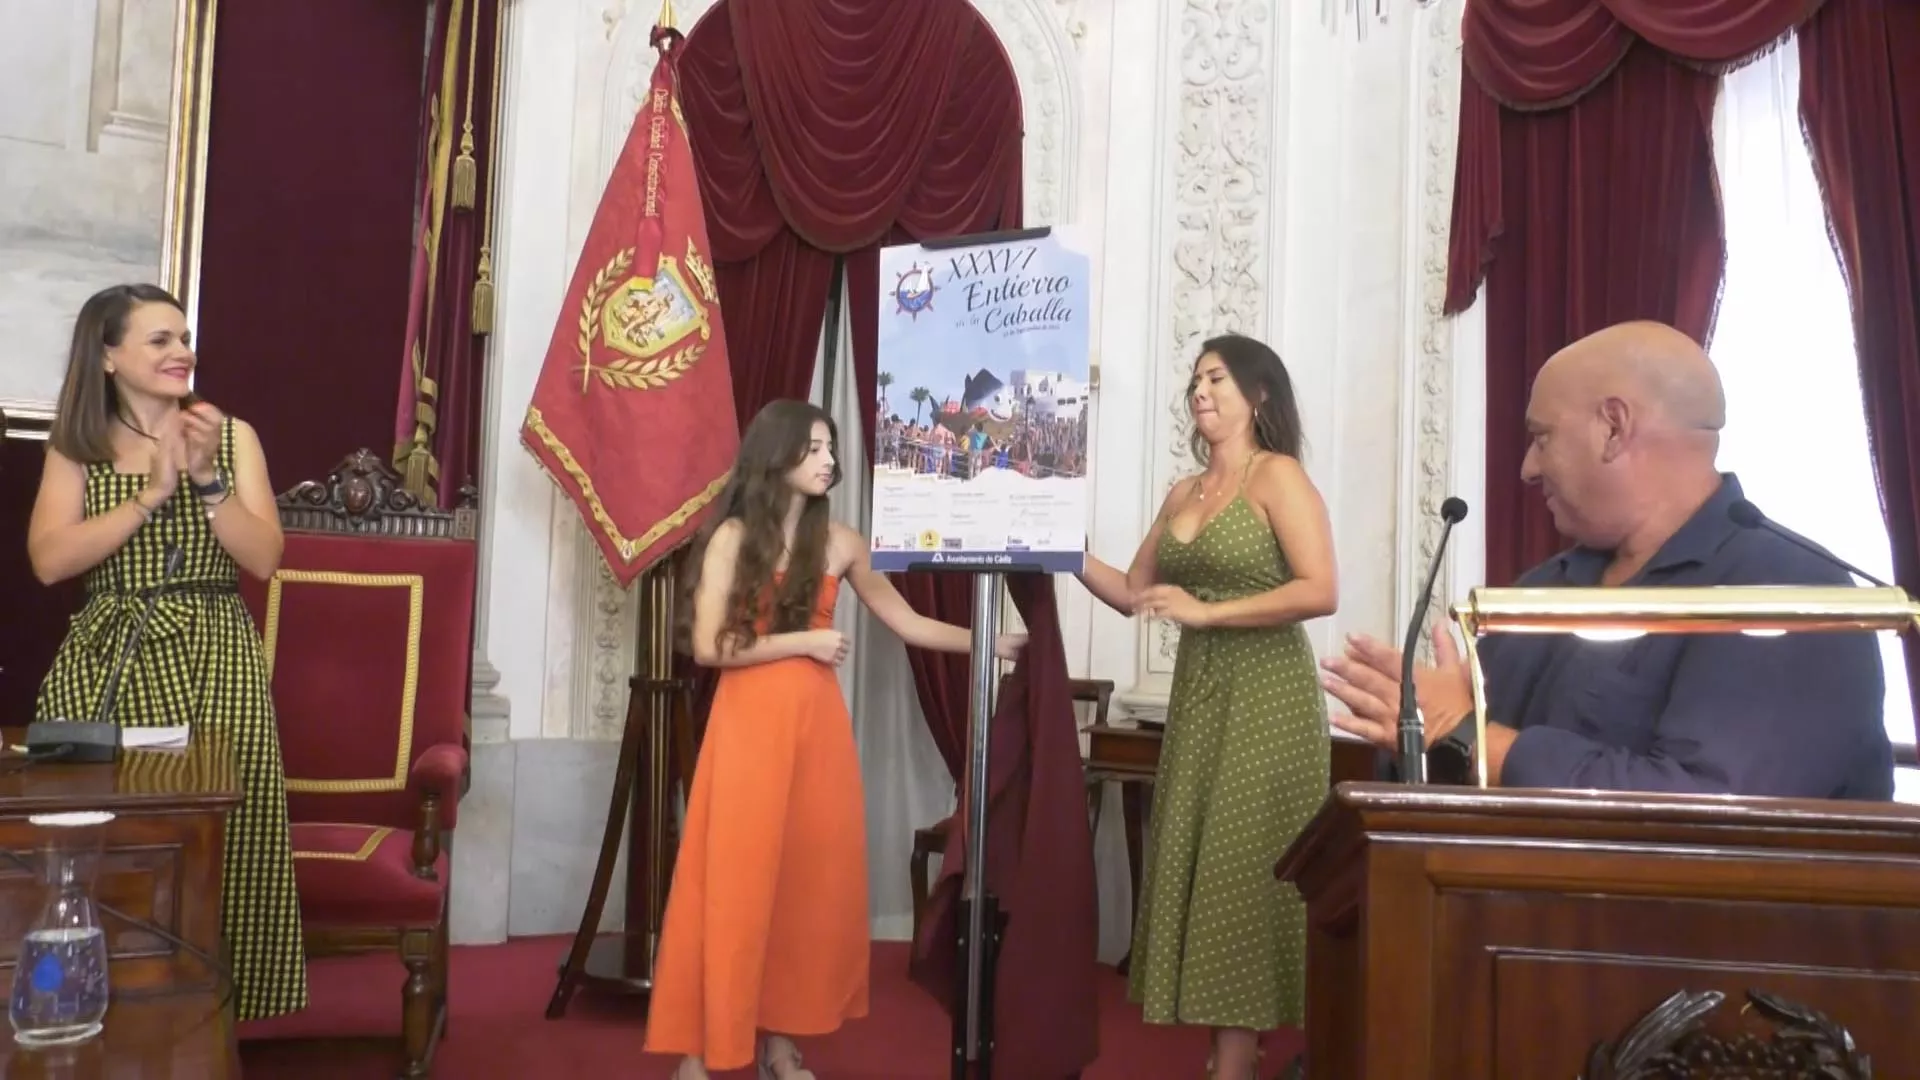 Las autoras del diseño, Eleanny Montes y Camila Espinoza, madre e hija, han sido las encargadas de descubrir el cartel anunciador del XXXVI entierro de la caballa